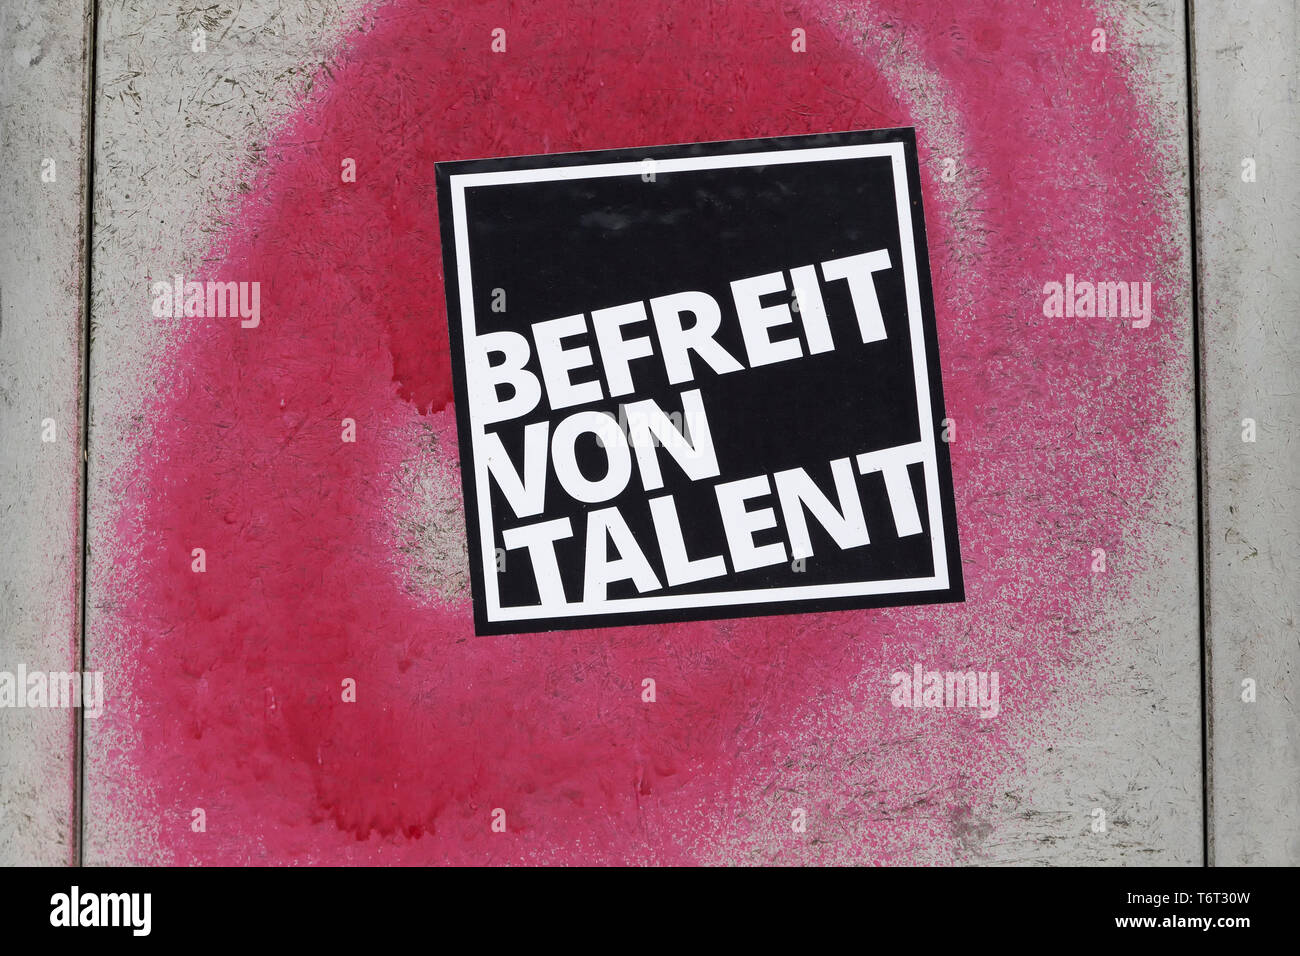 Autocollant, de talent, Berlin, Allemagne Banque D'Images